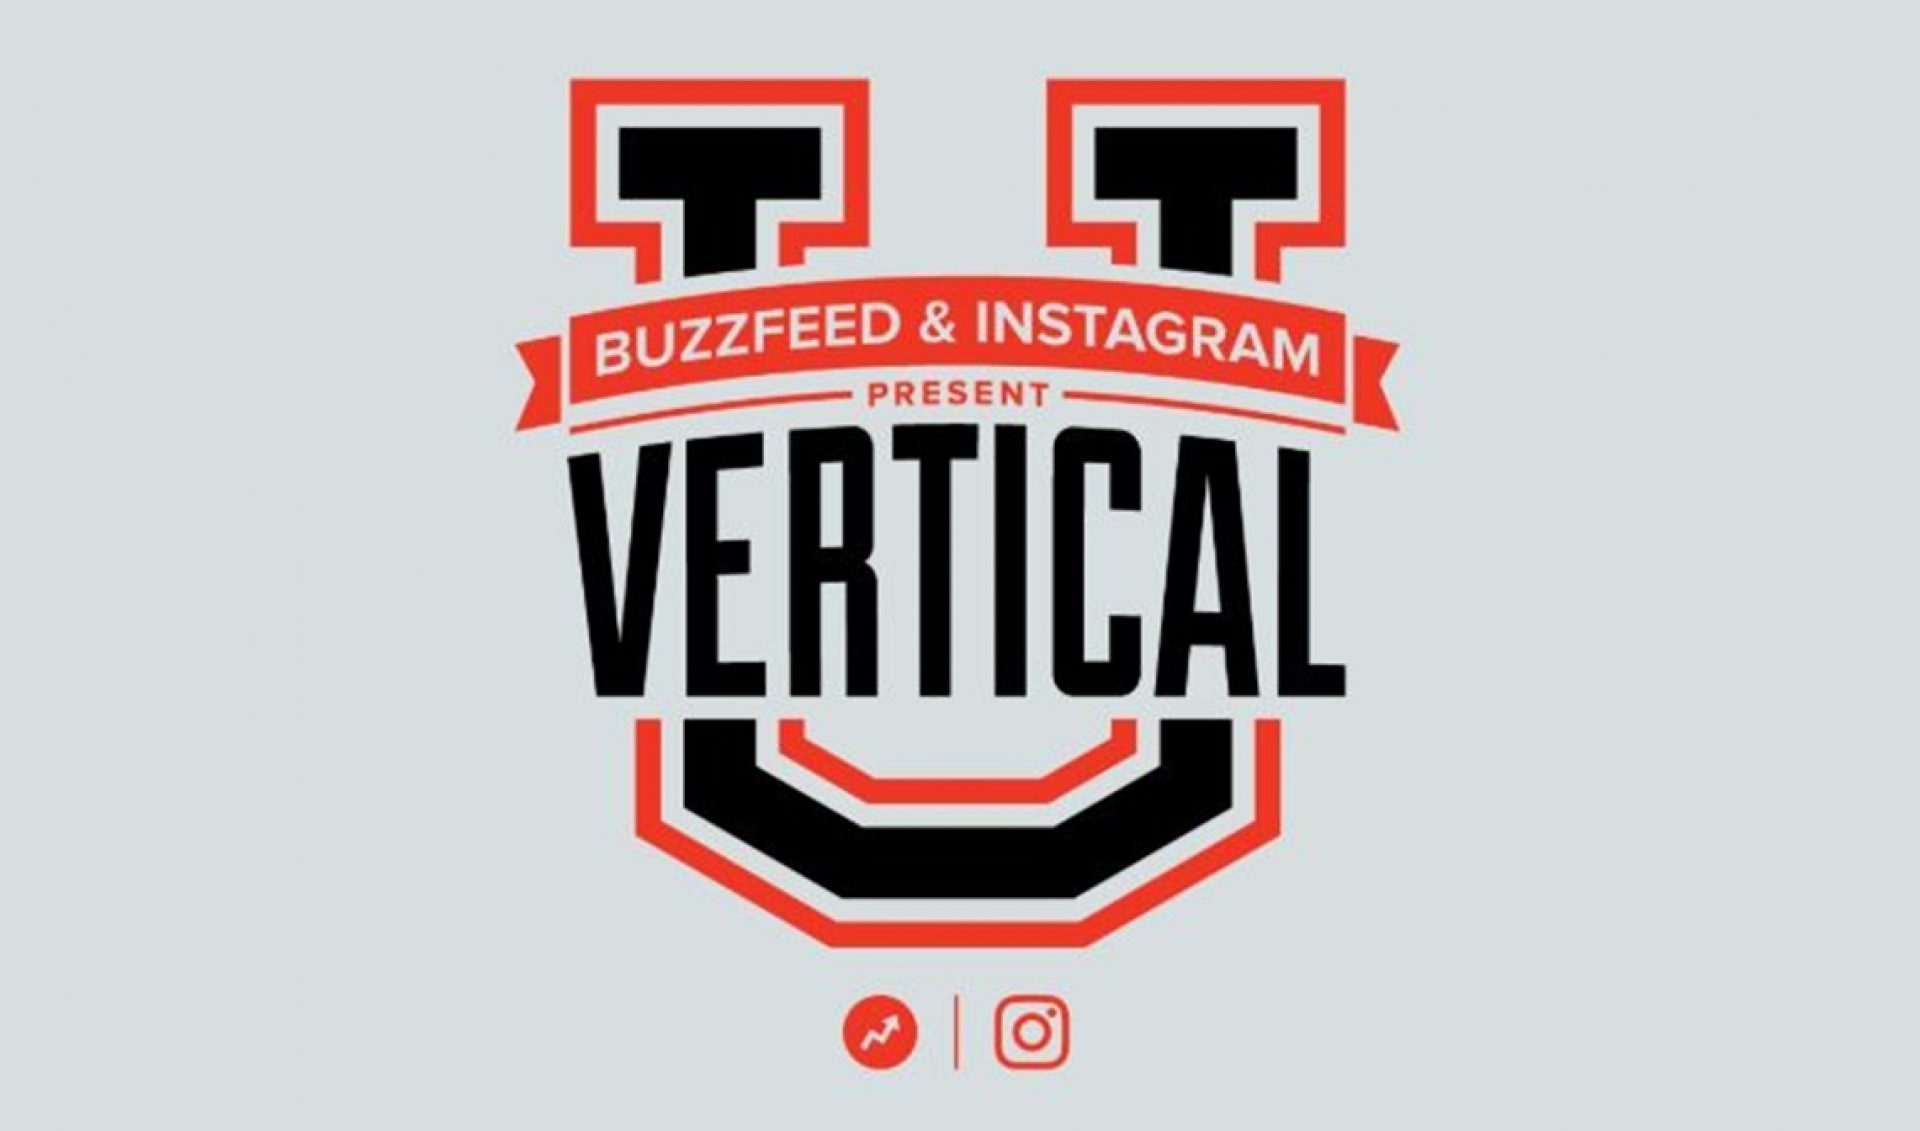 Instagram’s IGTV, BuzzFeed Launch Accelerator Program For 15 Vertical Video Creators